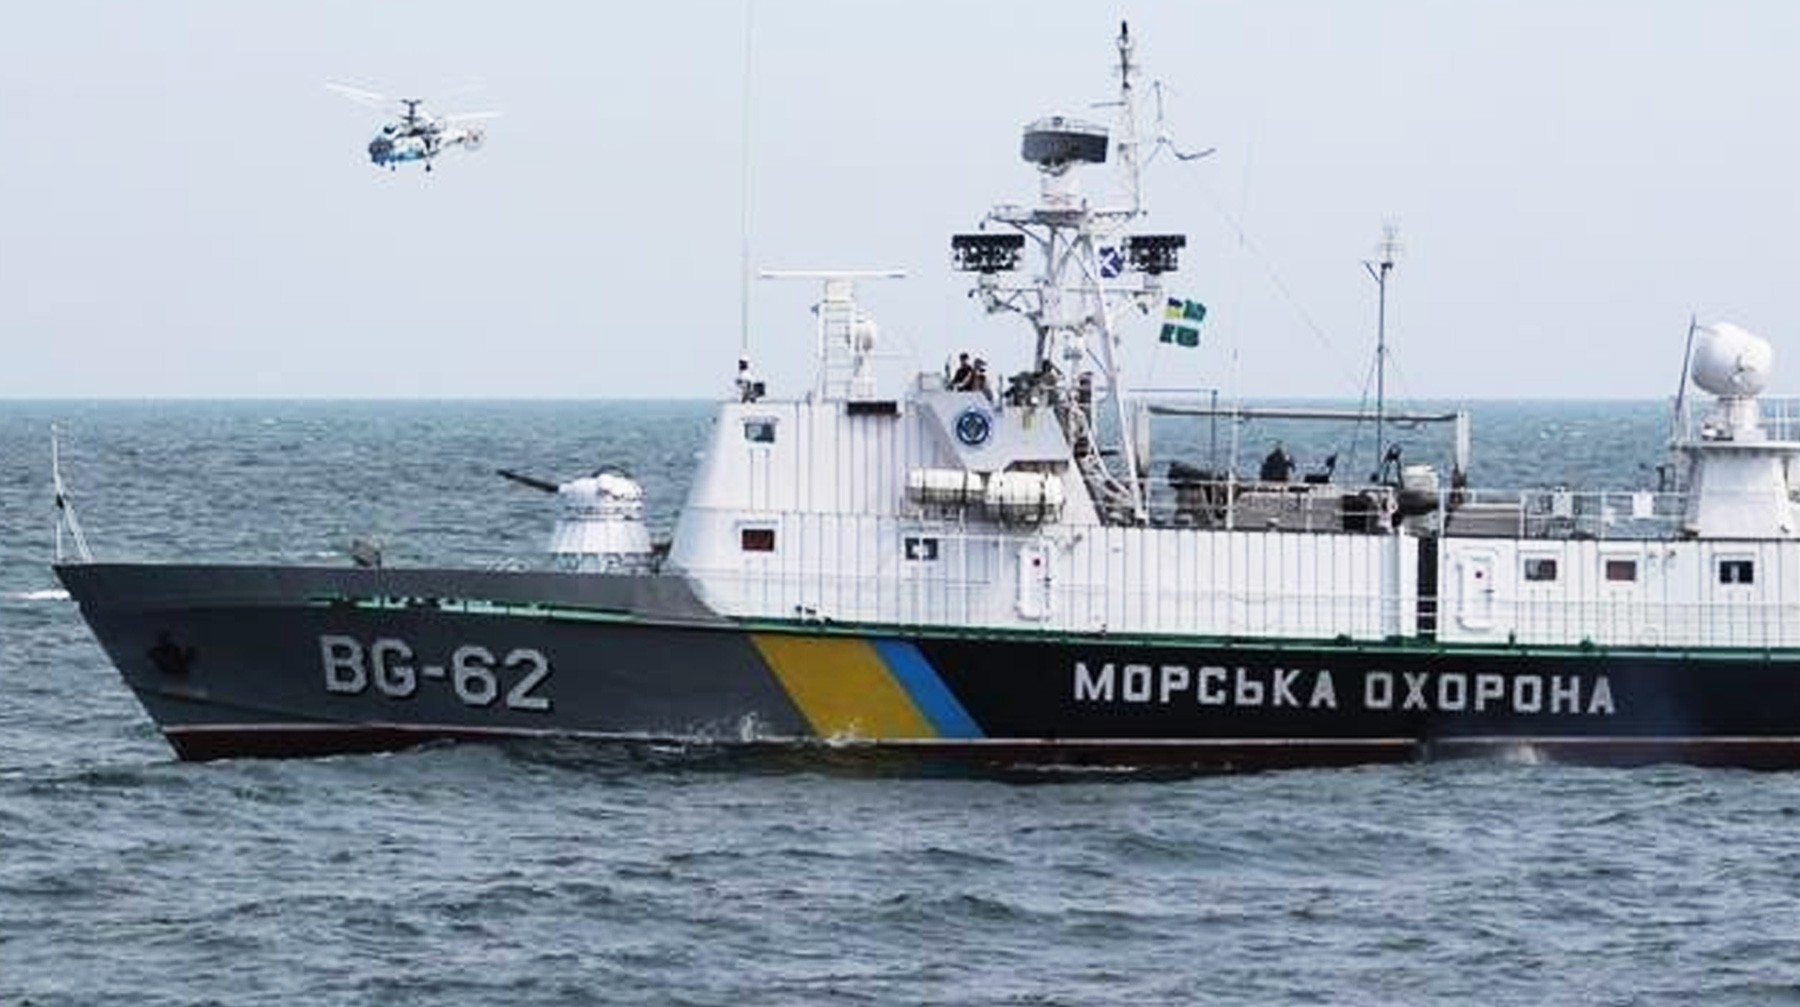 Dailystorm - Морской охране Украины разрешили стрелять без предупреждения при атаках на корабли